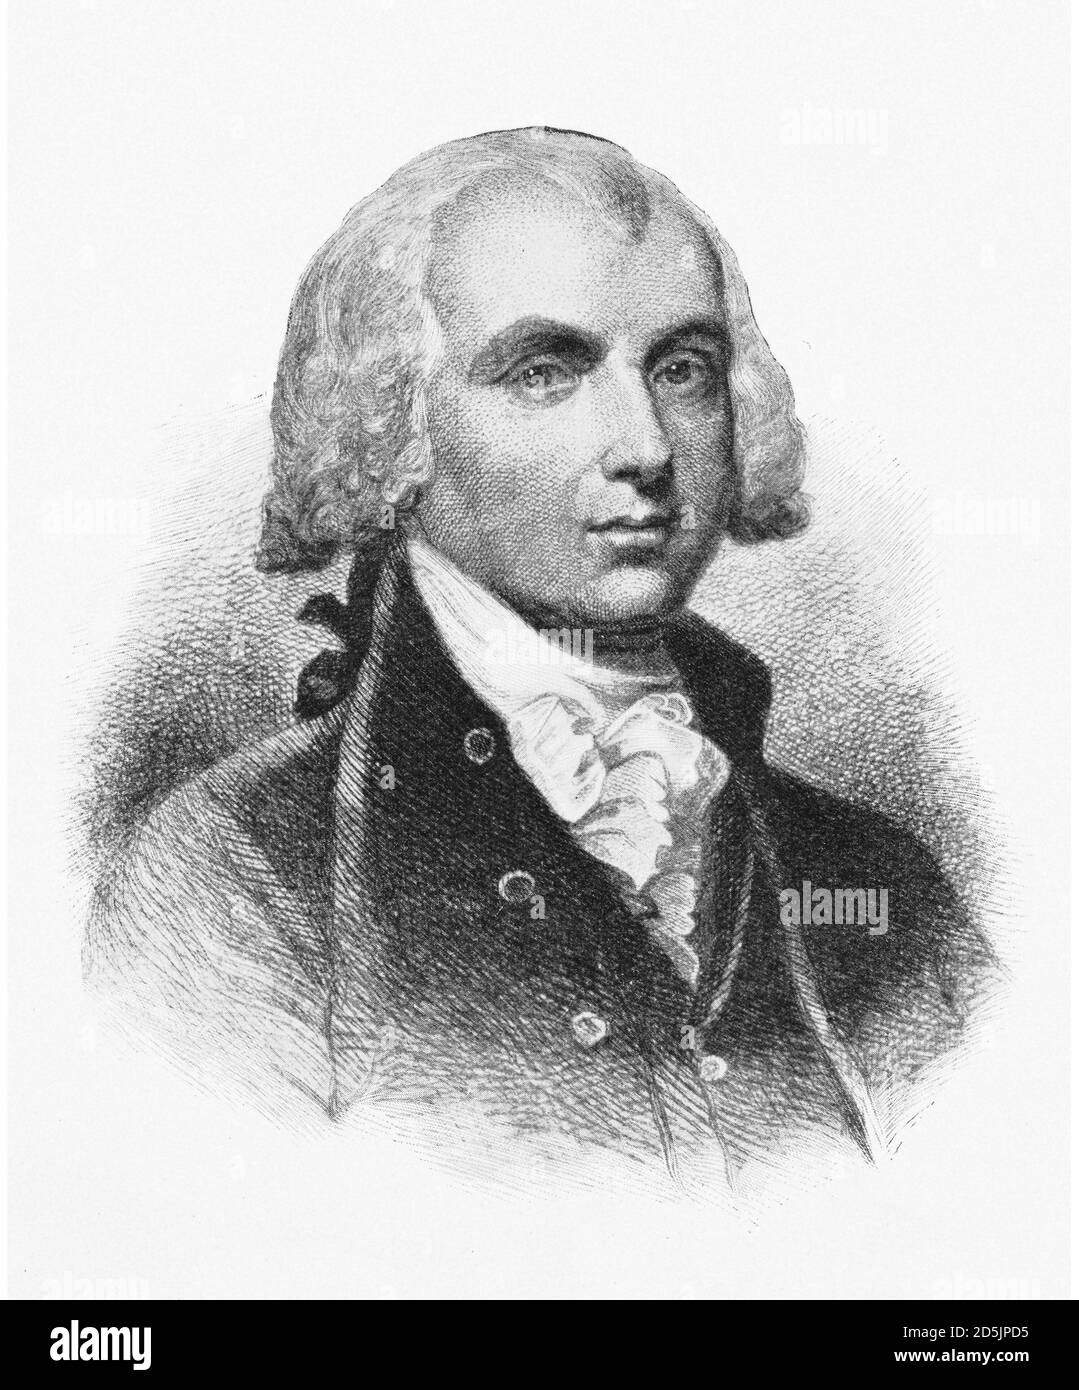 Porträt des Präsidenten James Madison Jr. James Madison Jr. (1751 – 1836) war ein amerikanischer Staatsmann, Diplomat, Expansionist, Philosoph und Gründer der Fa Stockfoto